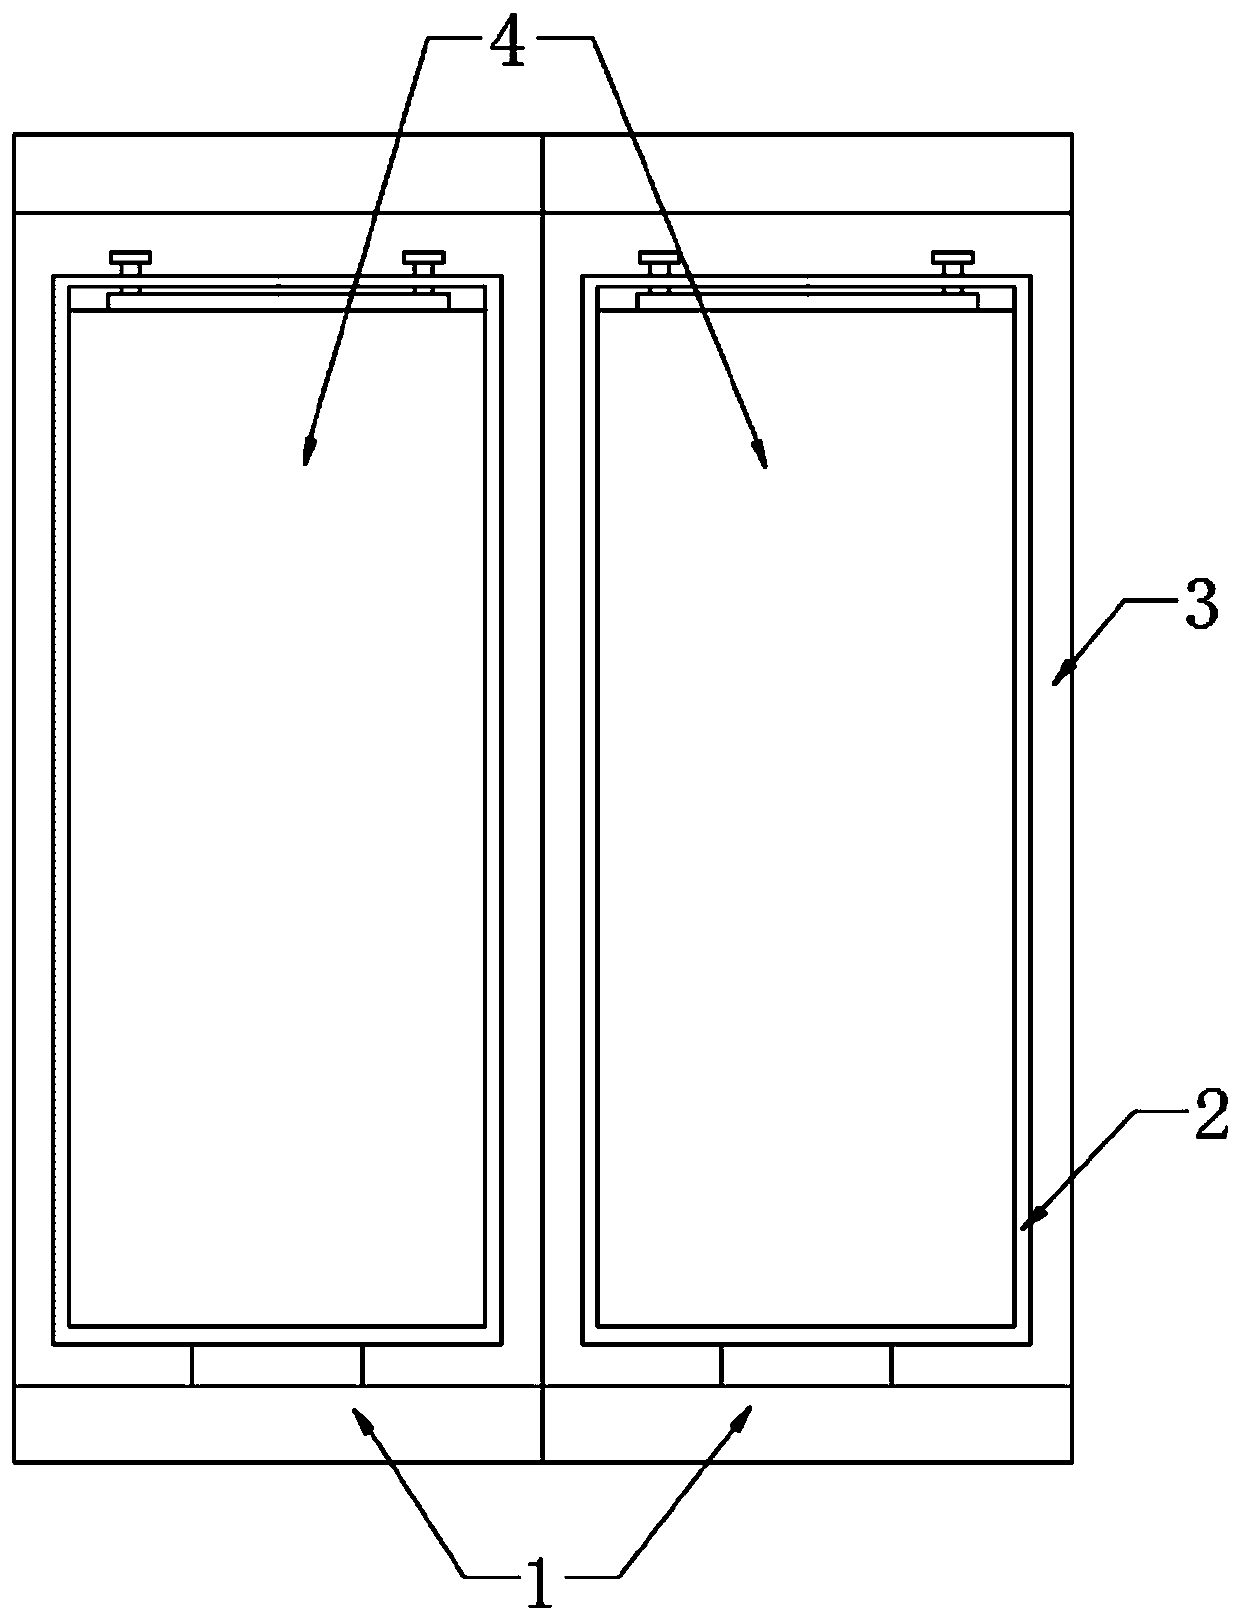 Display screen device for elevator door and channel door